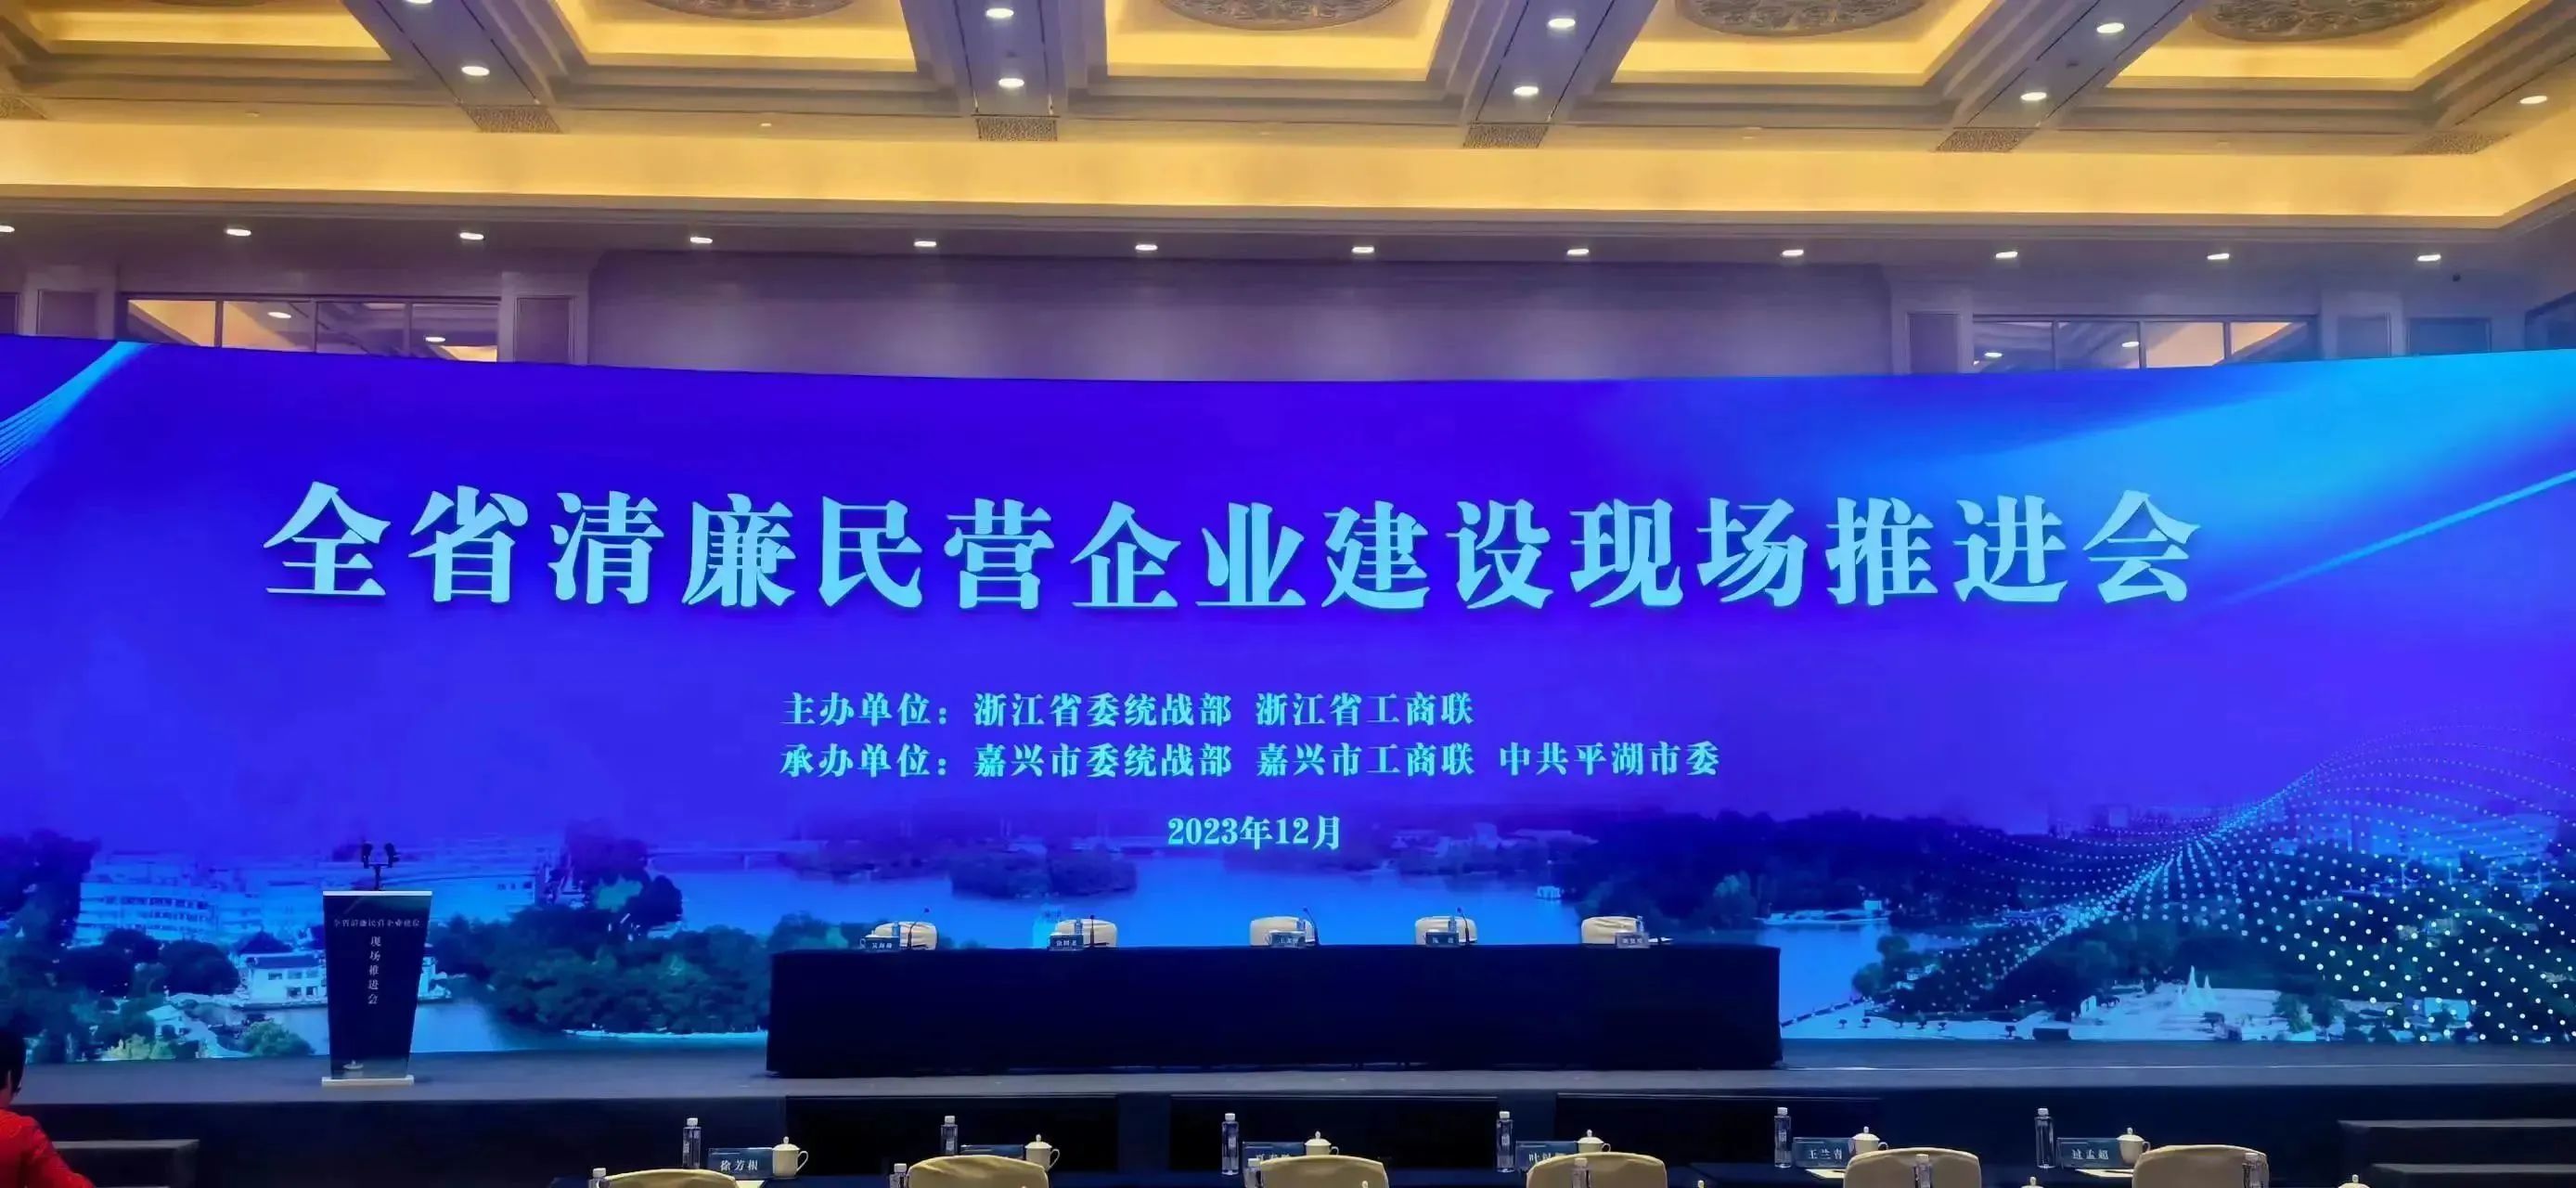 集團榮獲2023年度浙江省清亷民企建設示范單位稱號